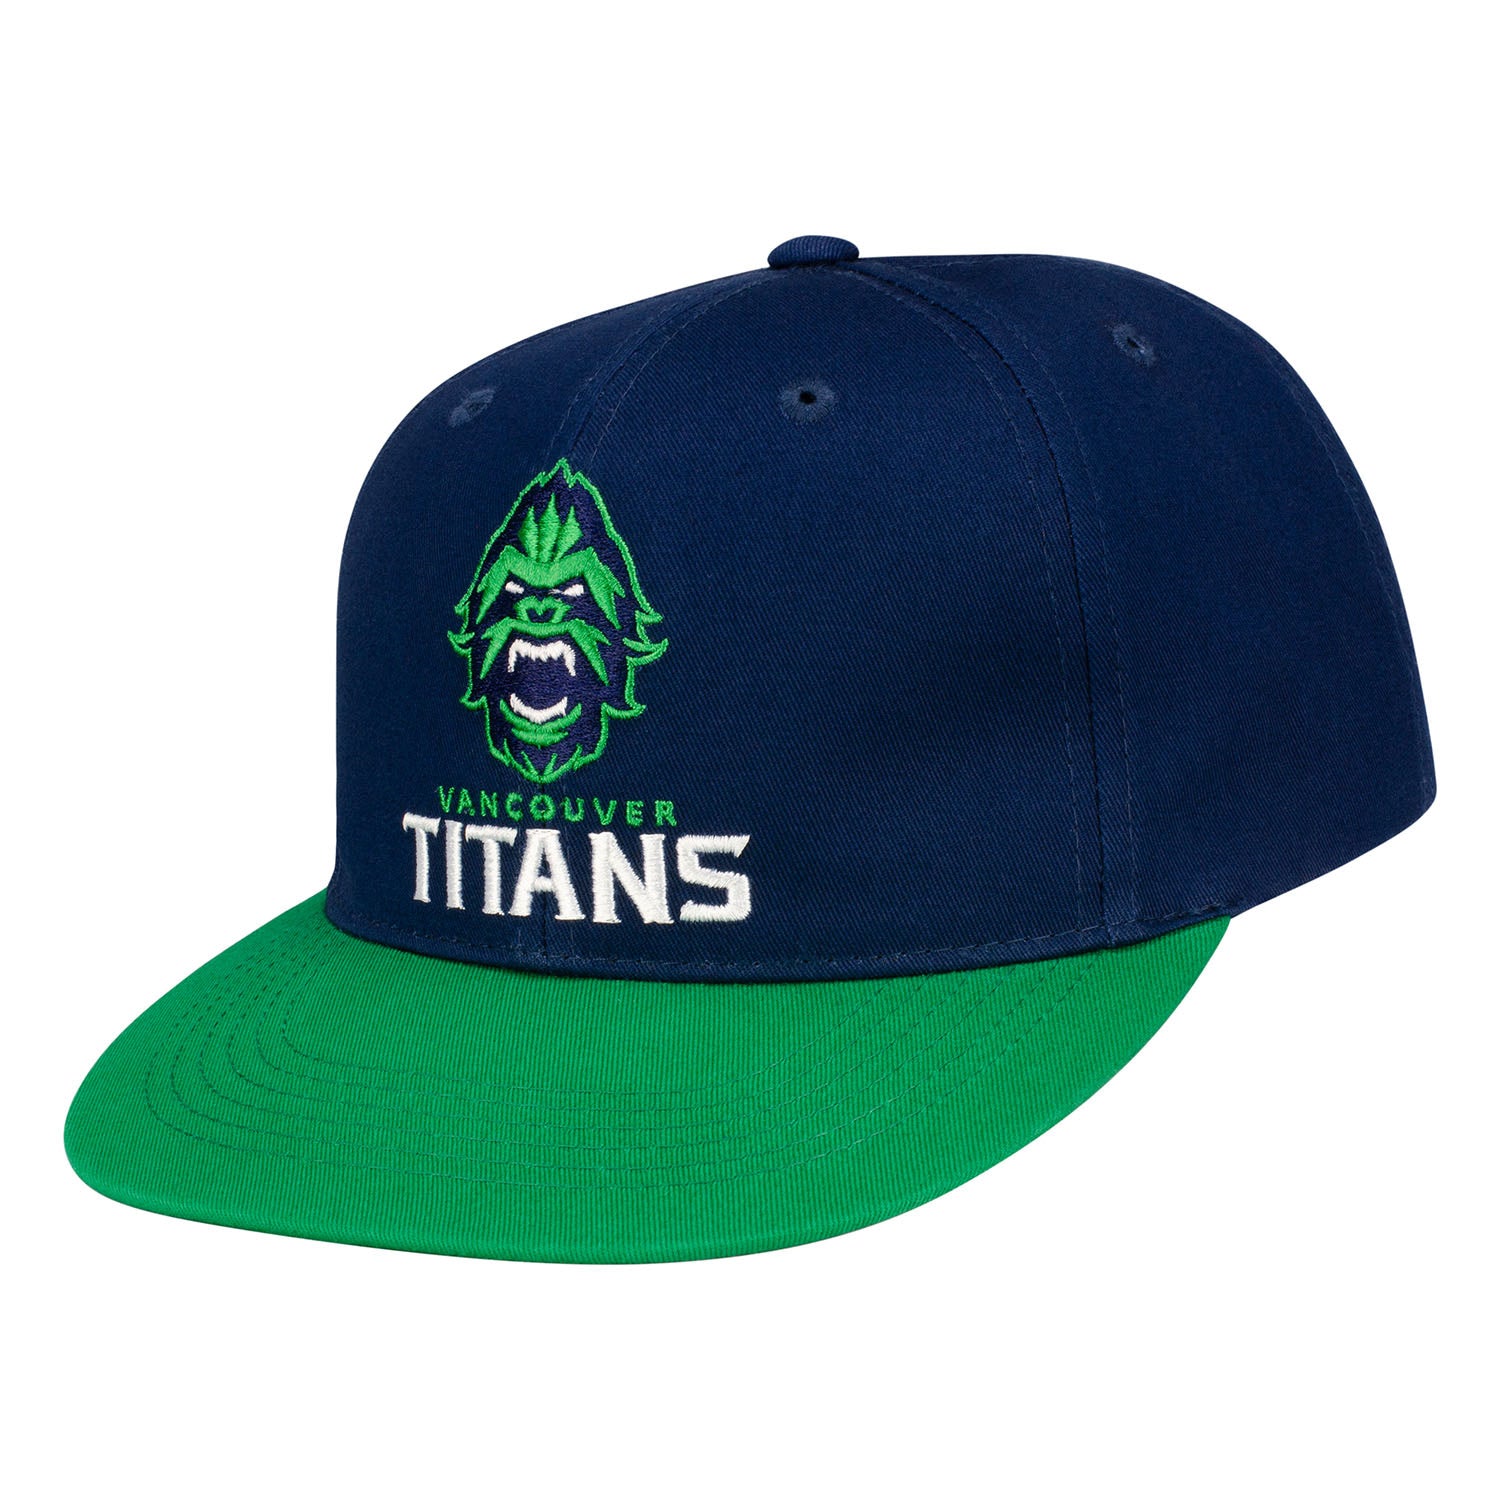 Vancouver Titans Blue Snapback Hat - Left View